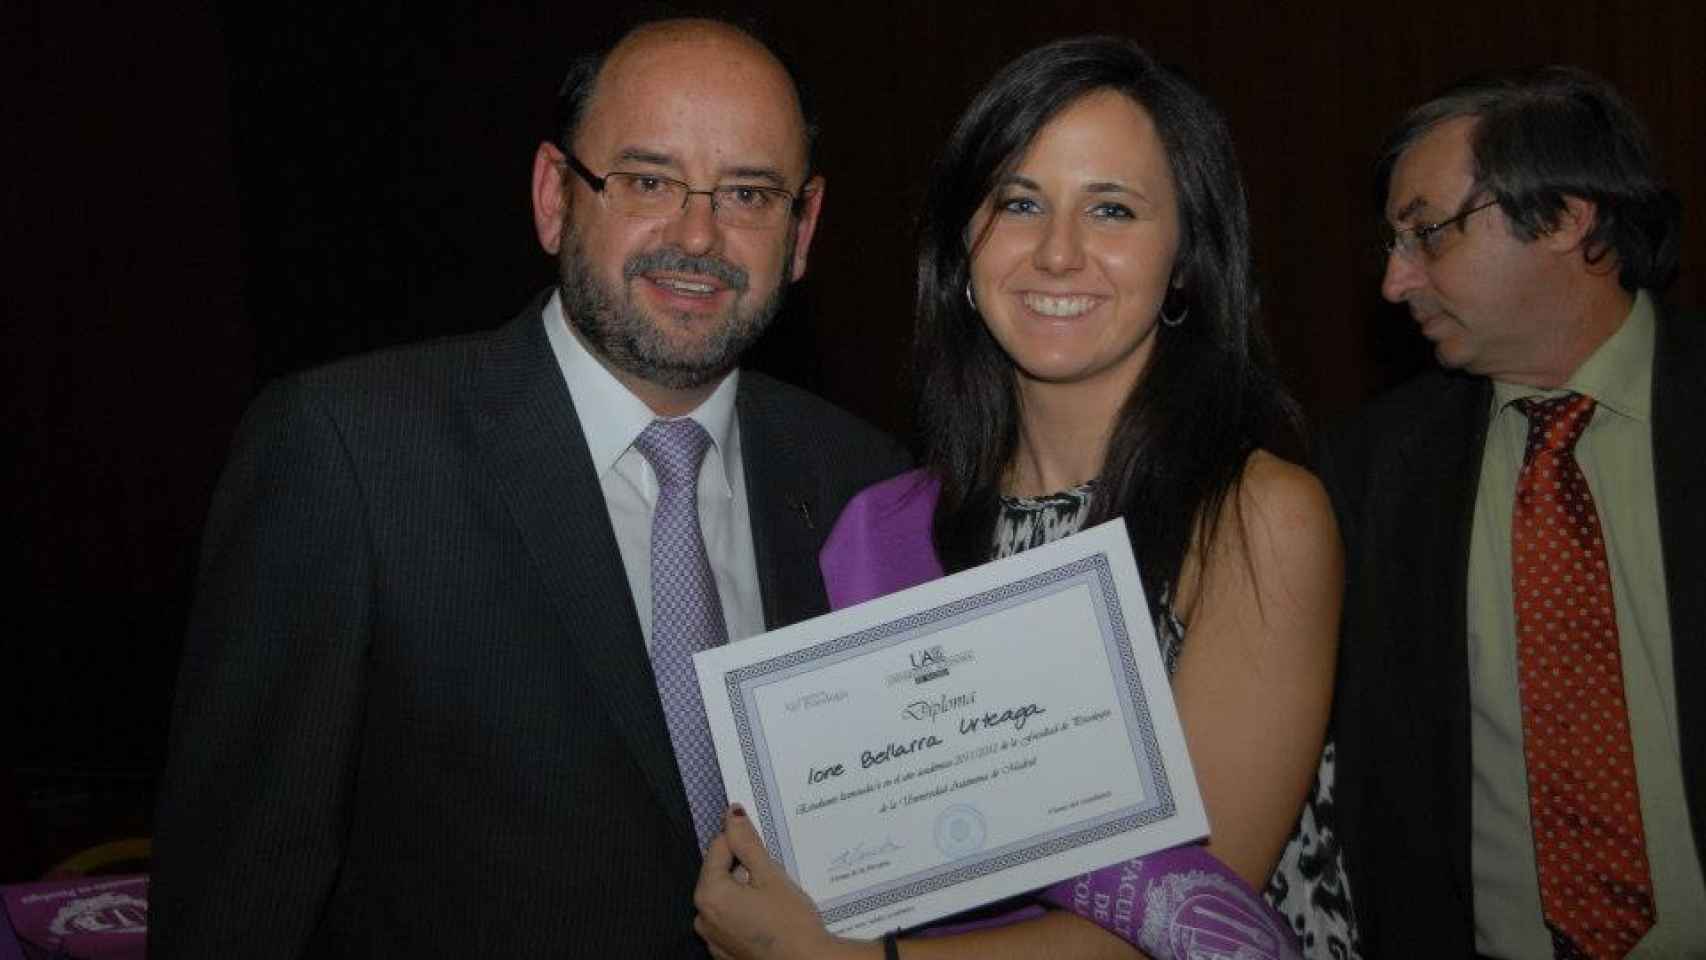 Ione Belarra con su diploma de Licenciada en Psicología en 2012.